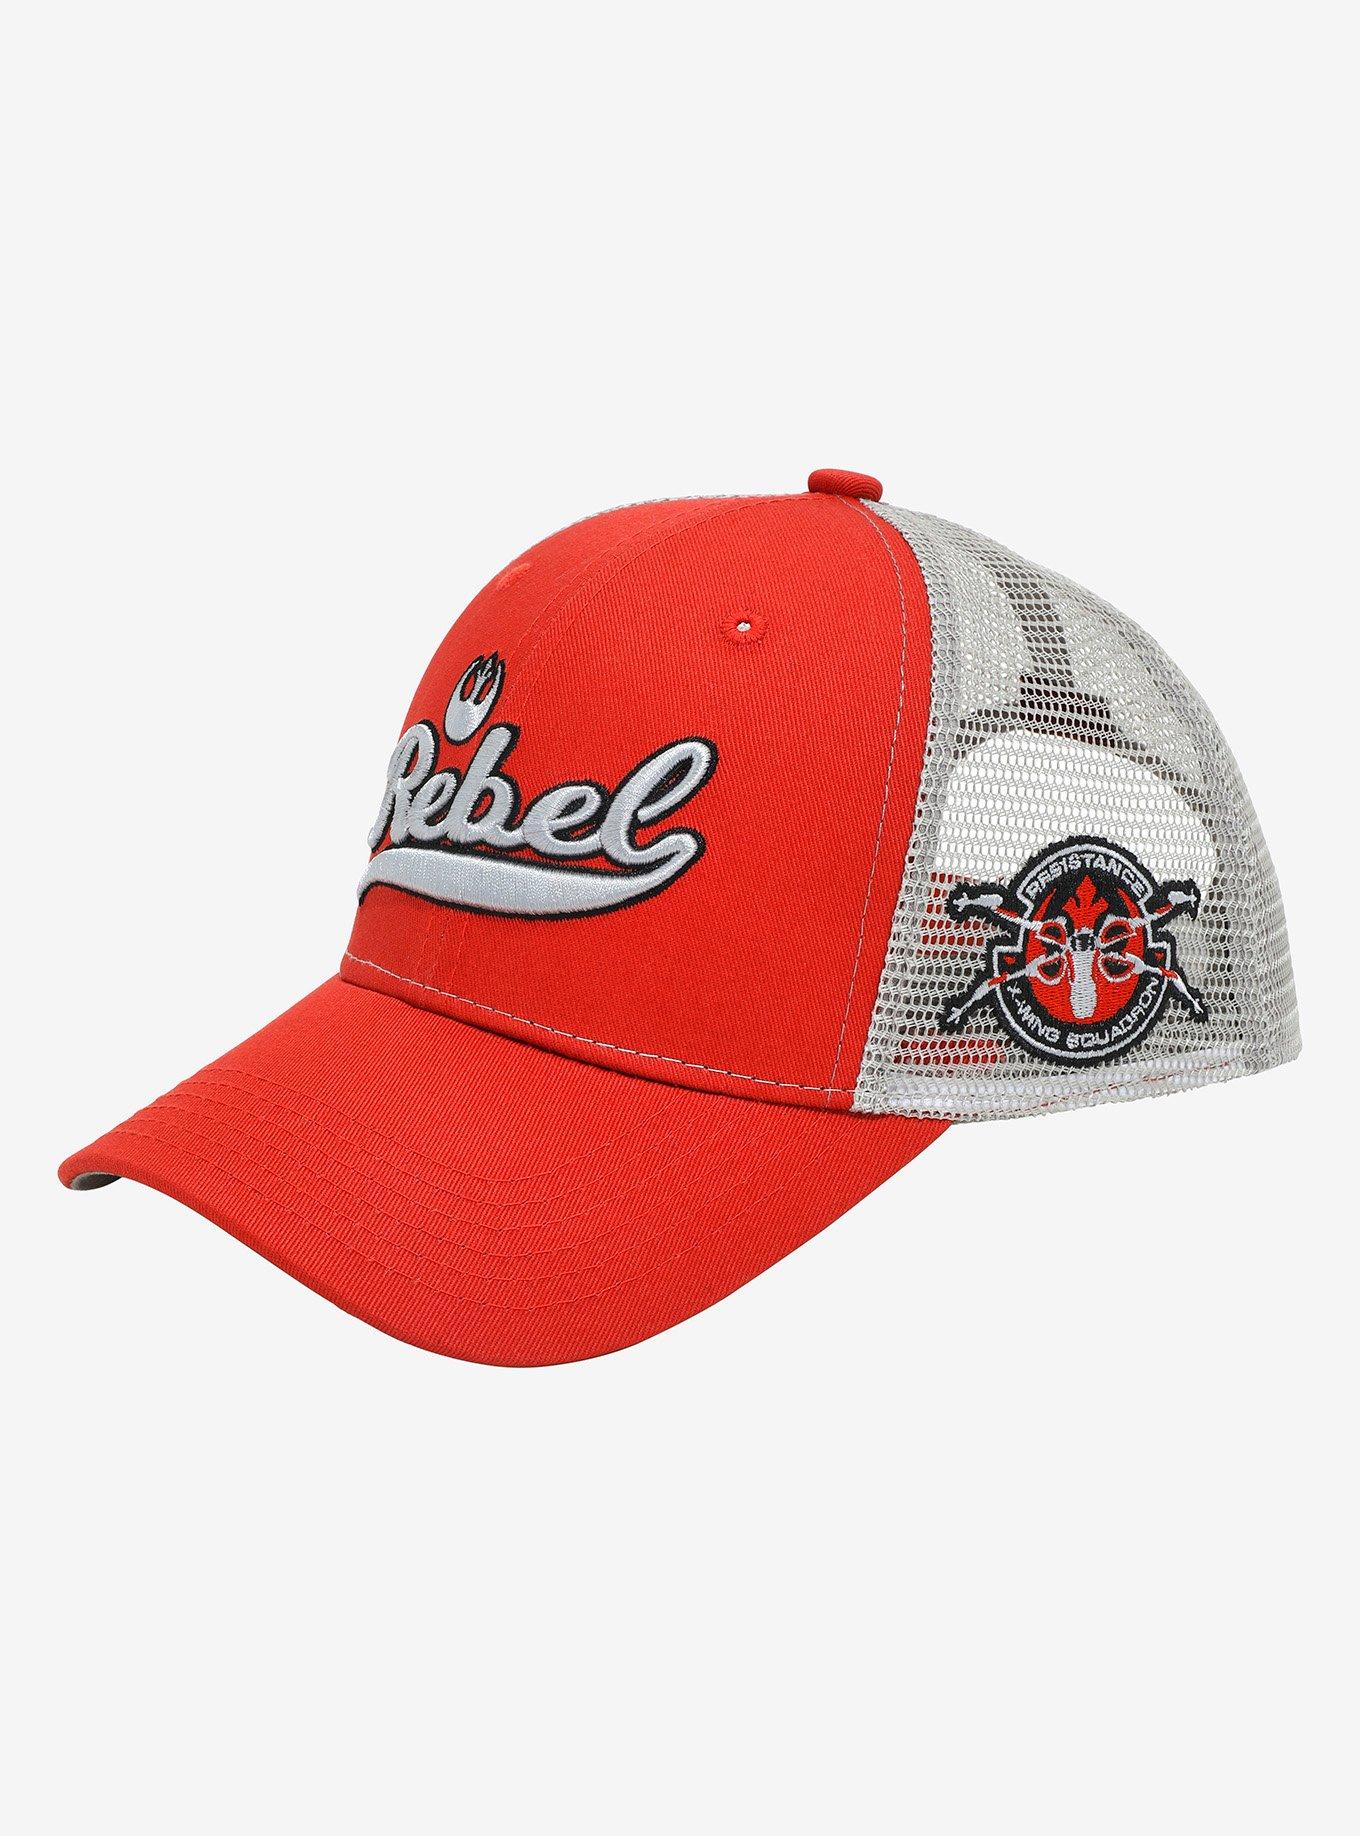 Star Wars Rebel Red Trucker Hat - BoxLunch Exclusive, , alternate